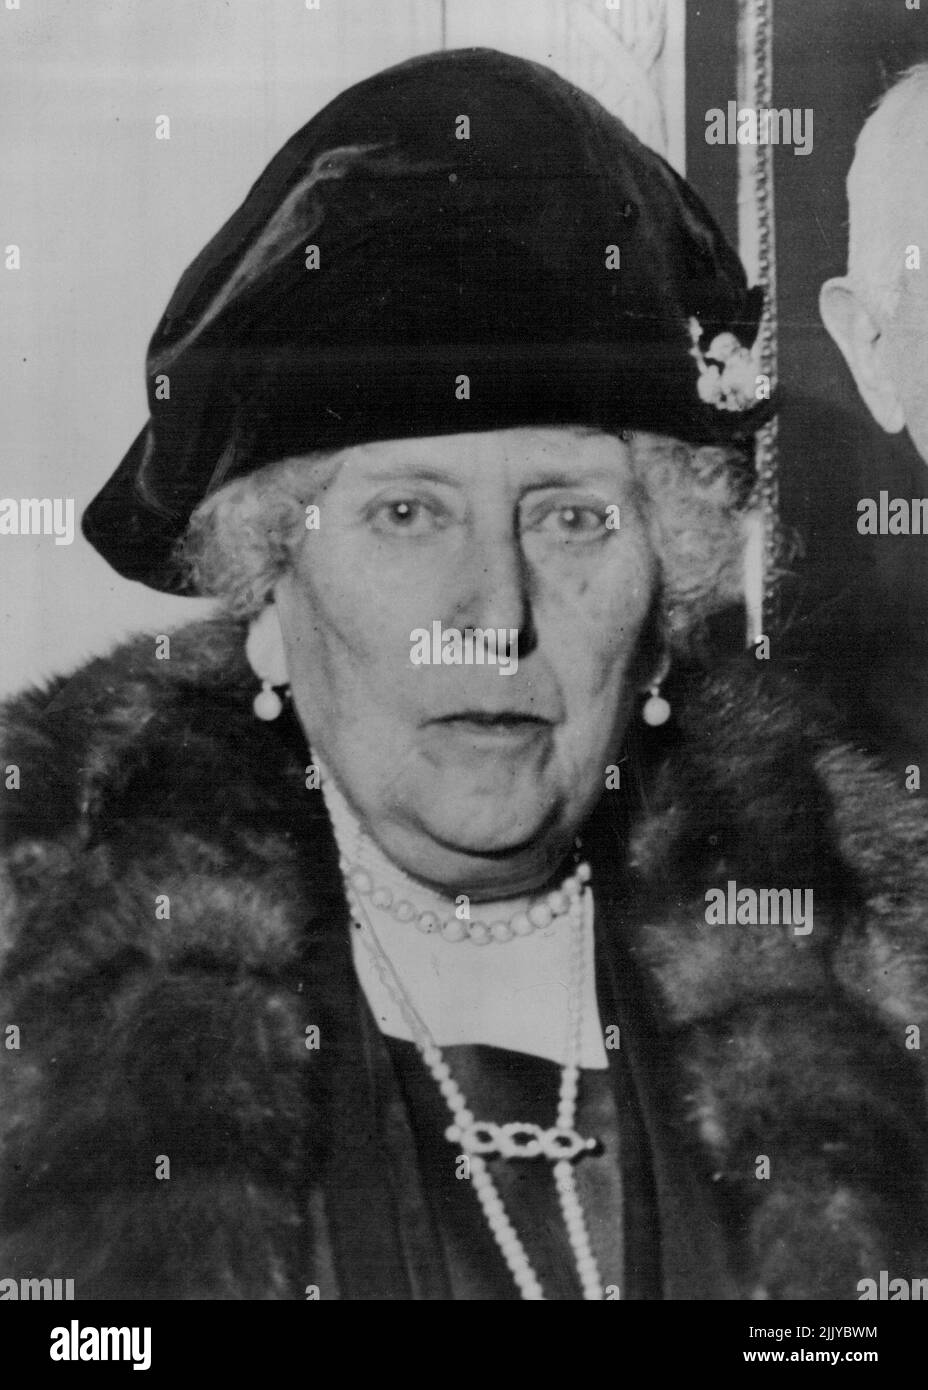 Prinzessin Beatrice starb heute früh im Alter von 87 Jahren. Sie war Großtante des jetzigen Königs und das letzte überlebende Kind von Königin Victoria. Ihre Tochter Victoria Eugenie, ehemalige Königin von Spanien, flog am Dienstag aus der Schweiz, um bei ihrer Mutter zu sein. 27. Oktober 1944. Stockfoto